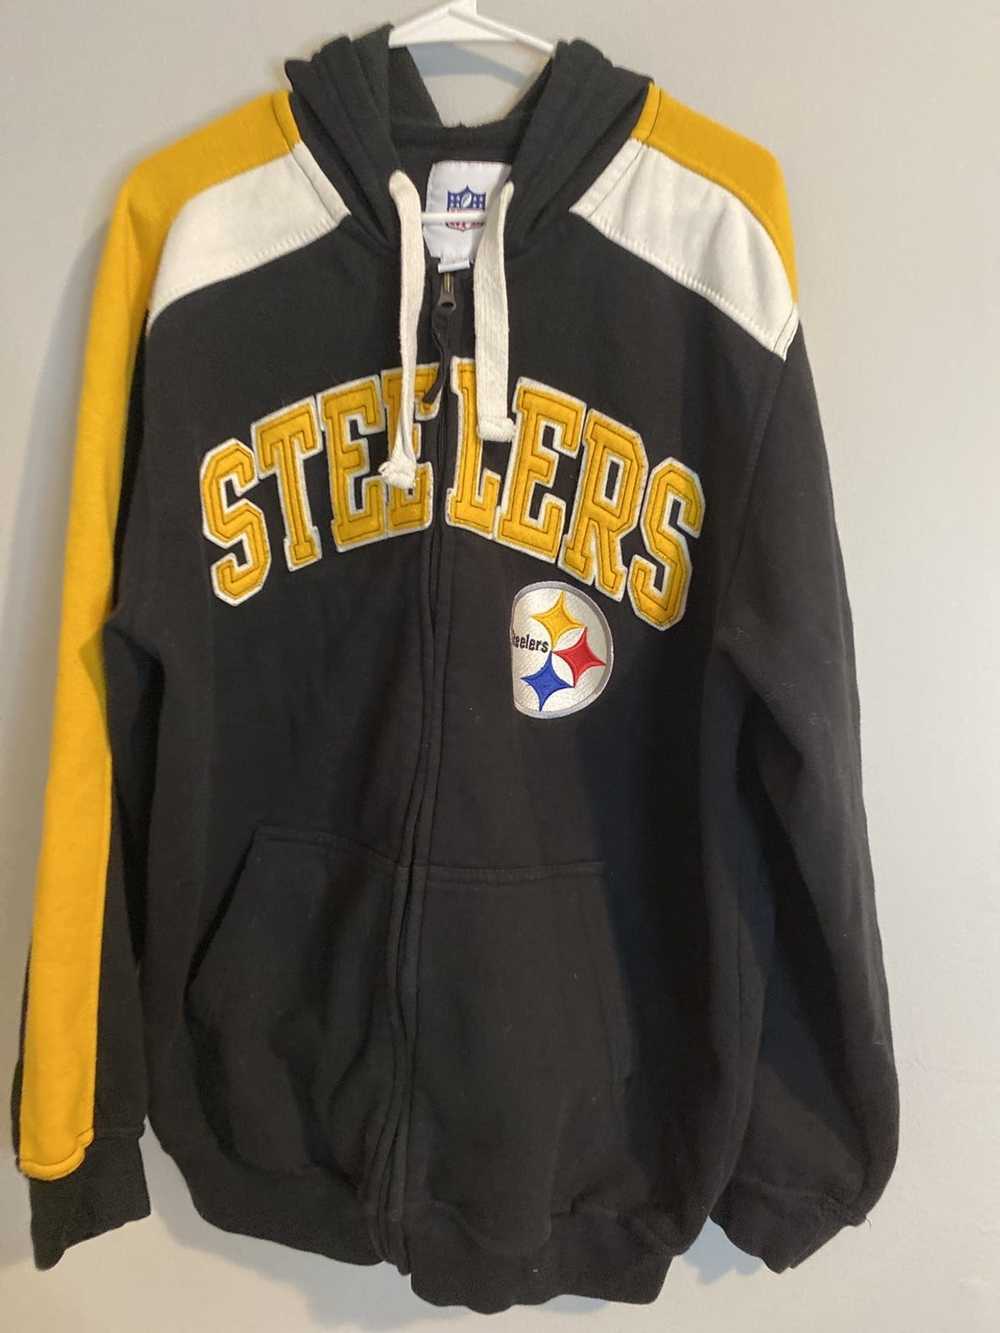 Streetwear × Vintage NFL Steelers Hoodie - image 1